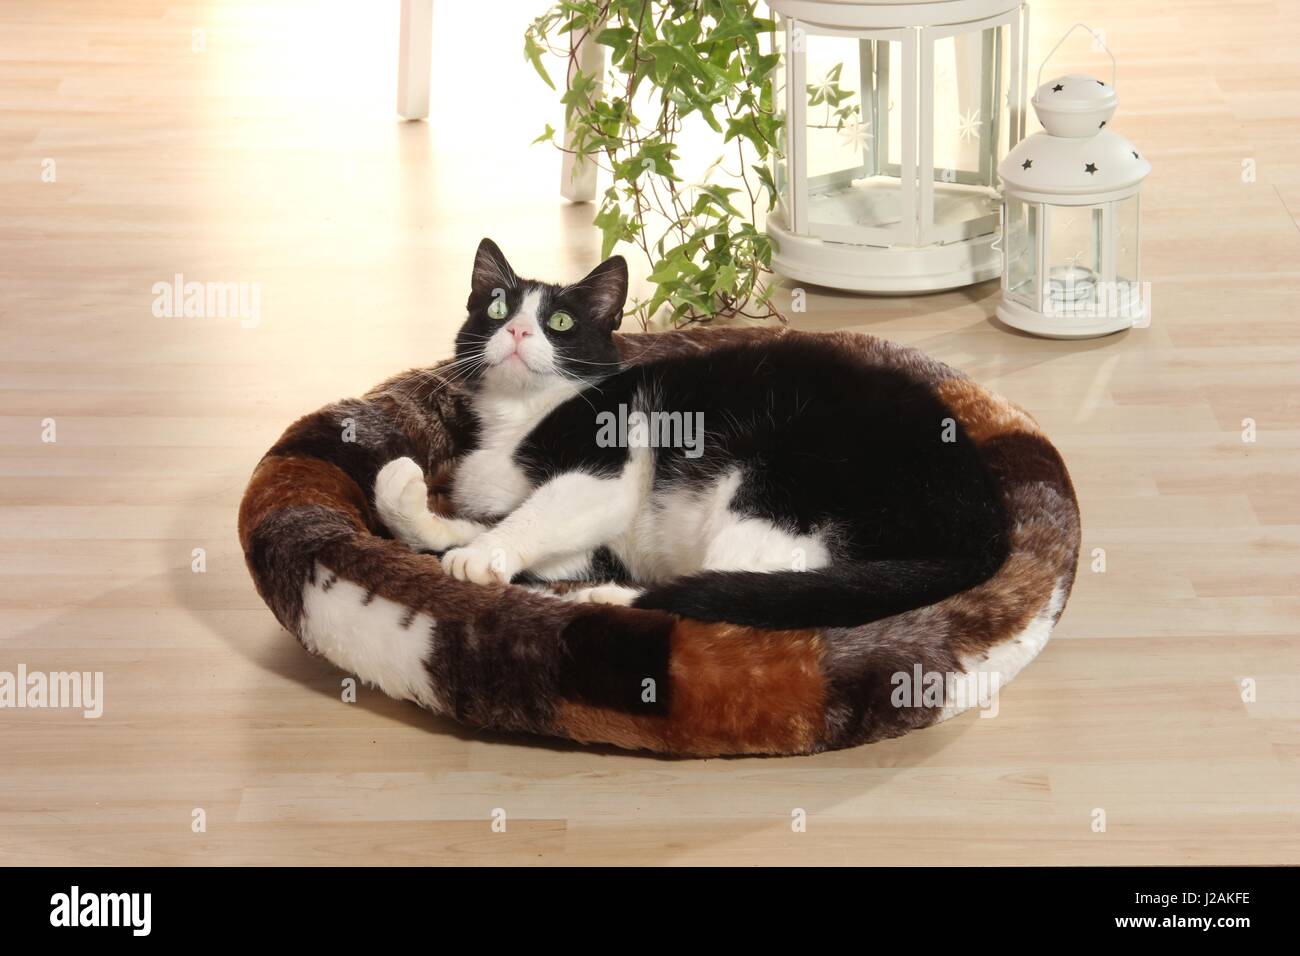 Chat domestique, Tuxedo, noir et blanc, se trouve dans un coussin chat sur le plancher à la maison Banque D'Images